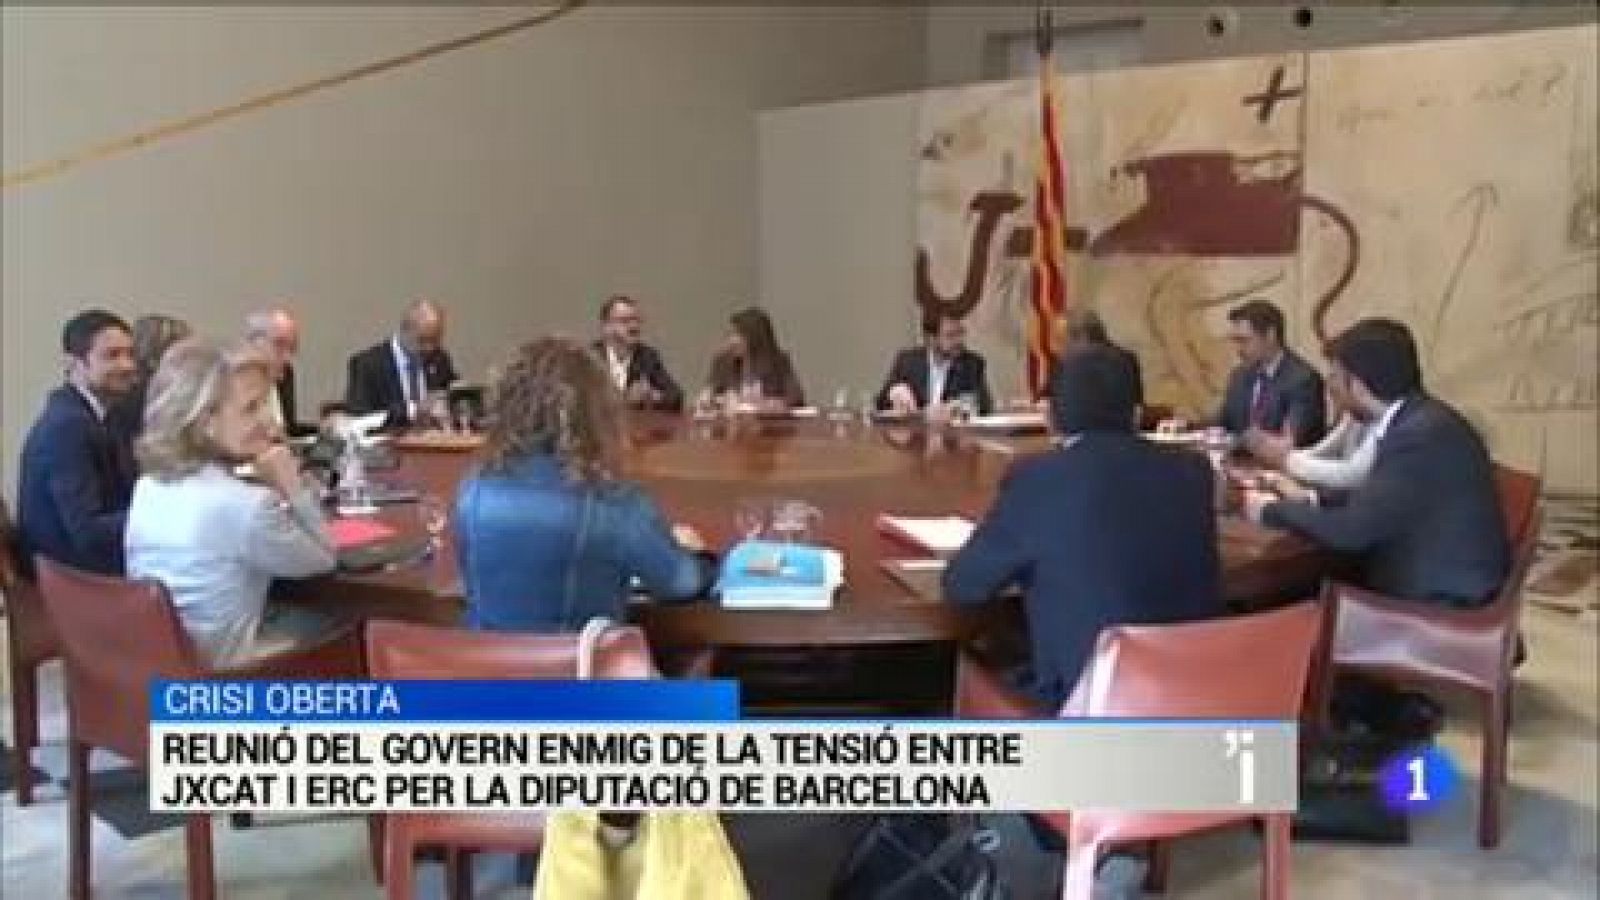 L'Informatiu | Sumari de les notícies del 09/07/2019 - RTVE.es